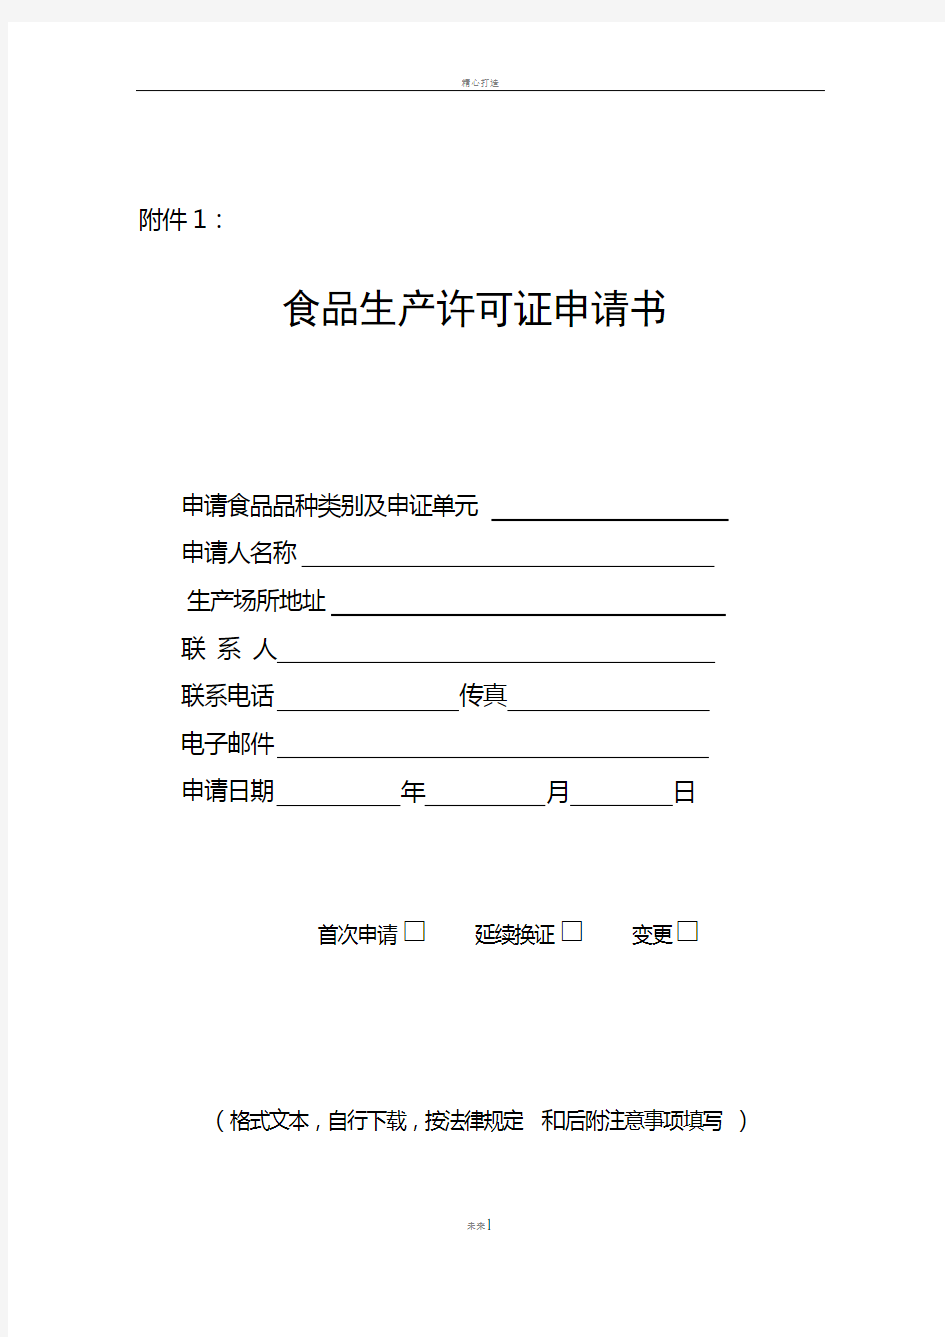 食品生产许可证申请书(2010版)下载